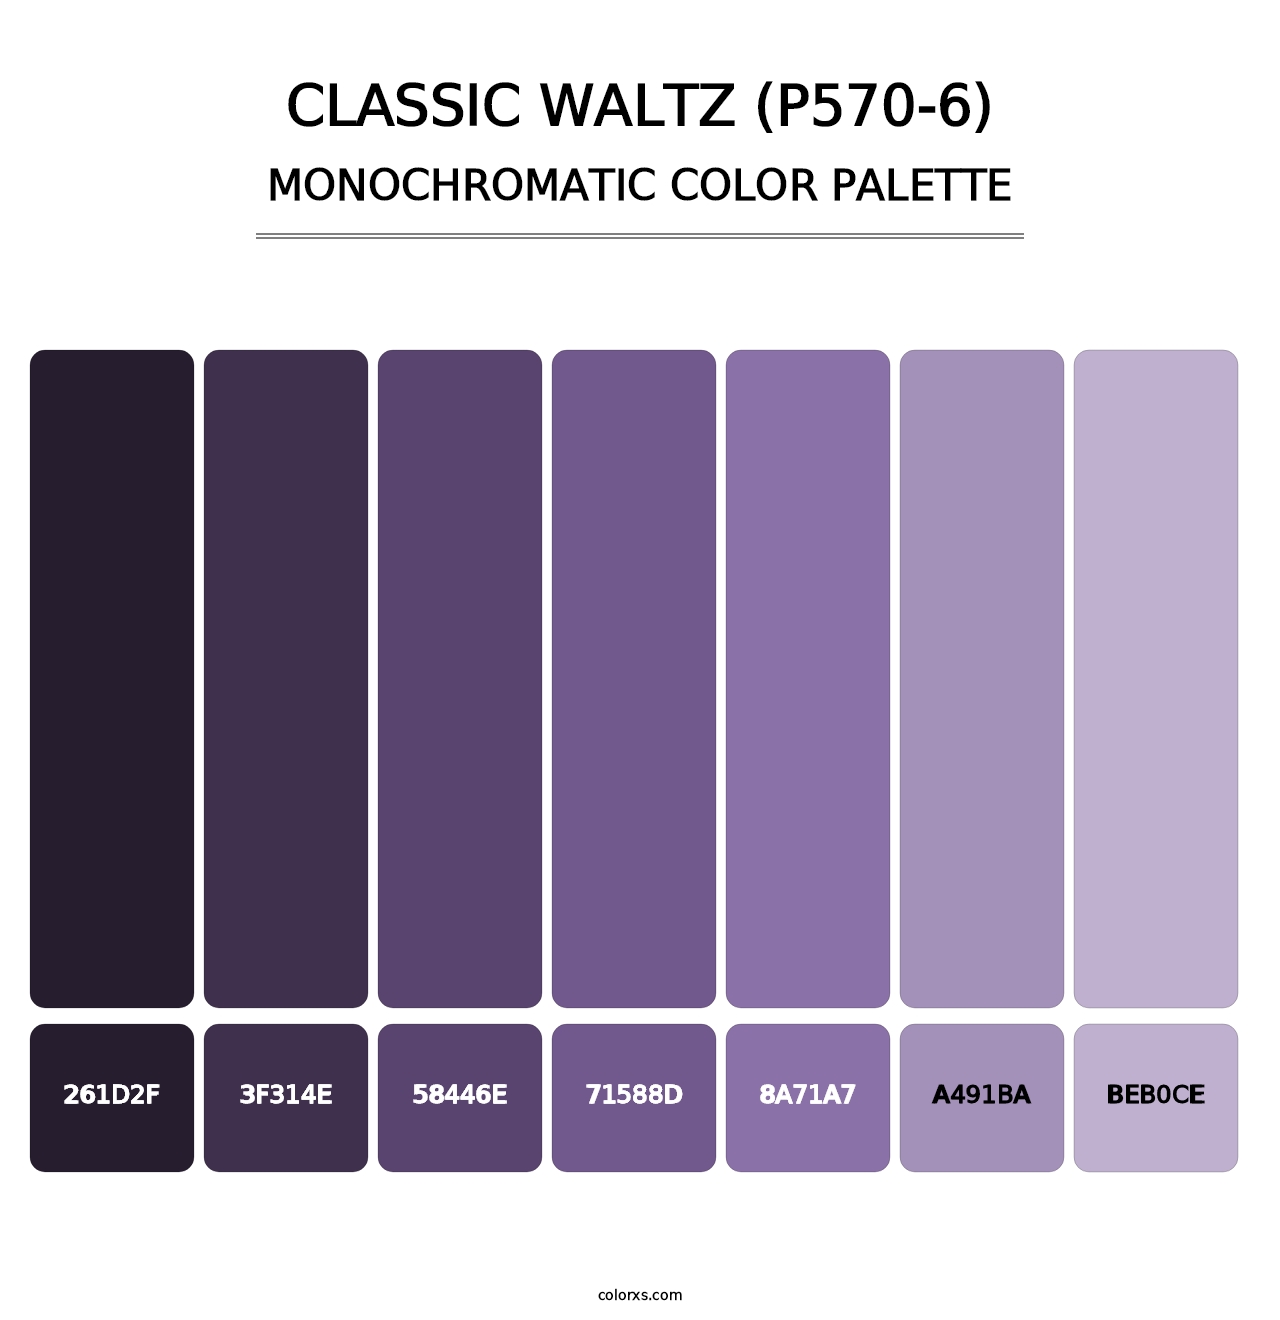 Classic Waltz (P570-6) - Monochromatic Color Palette